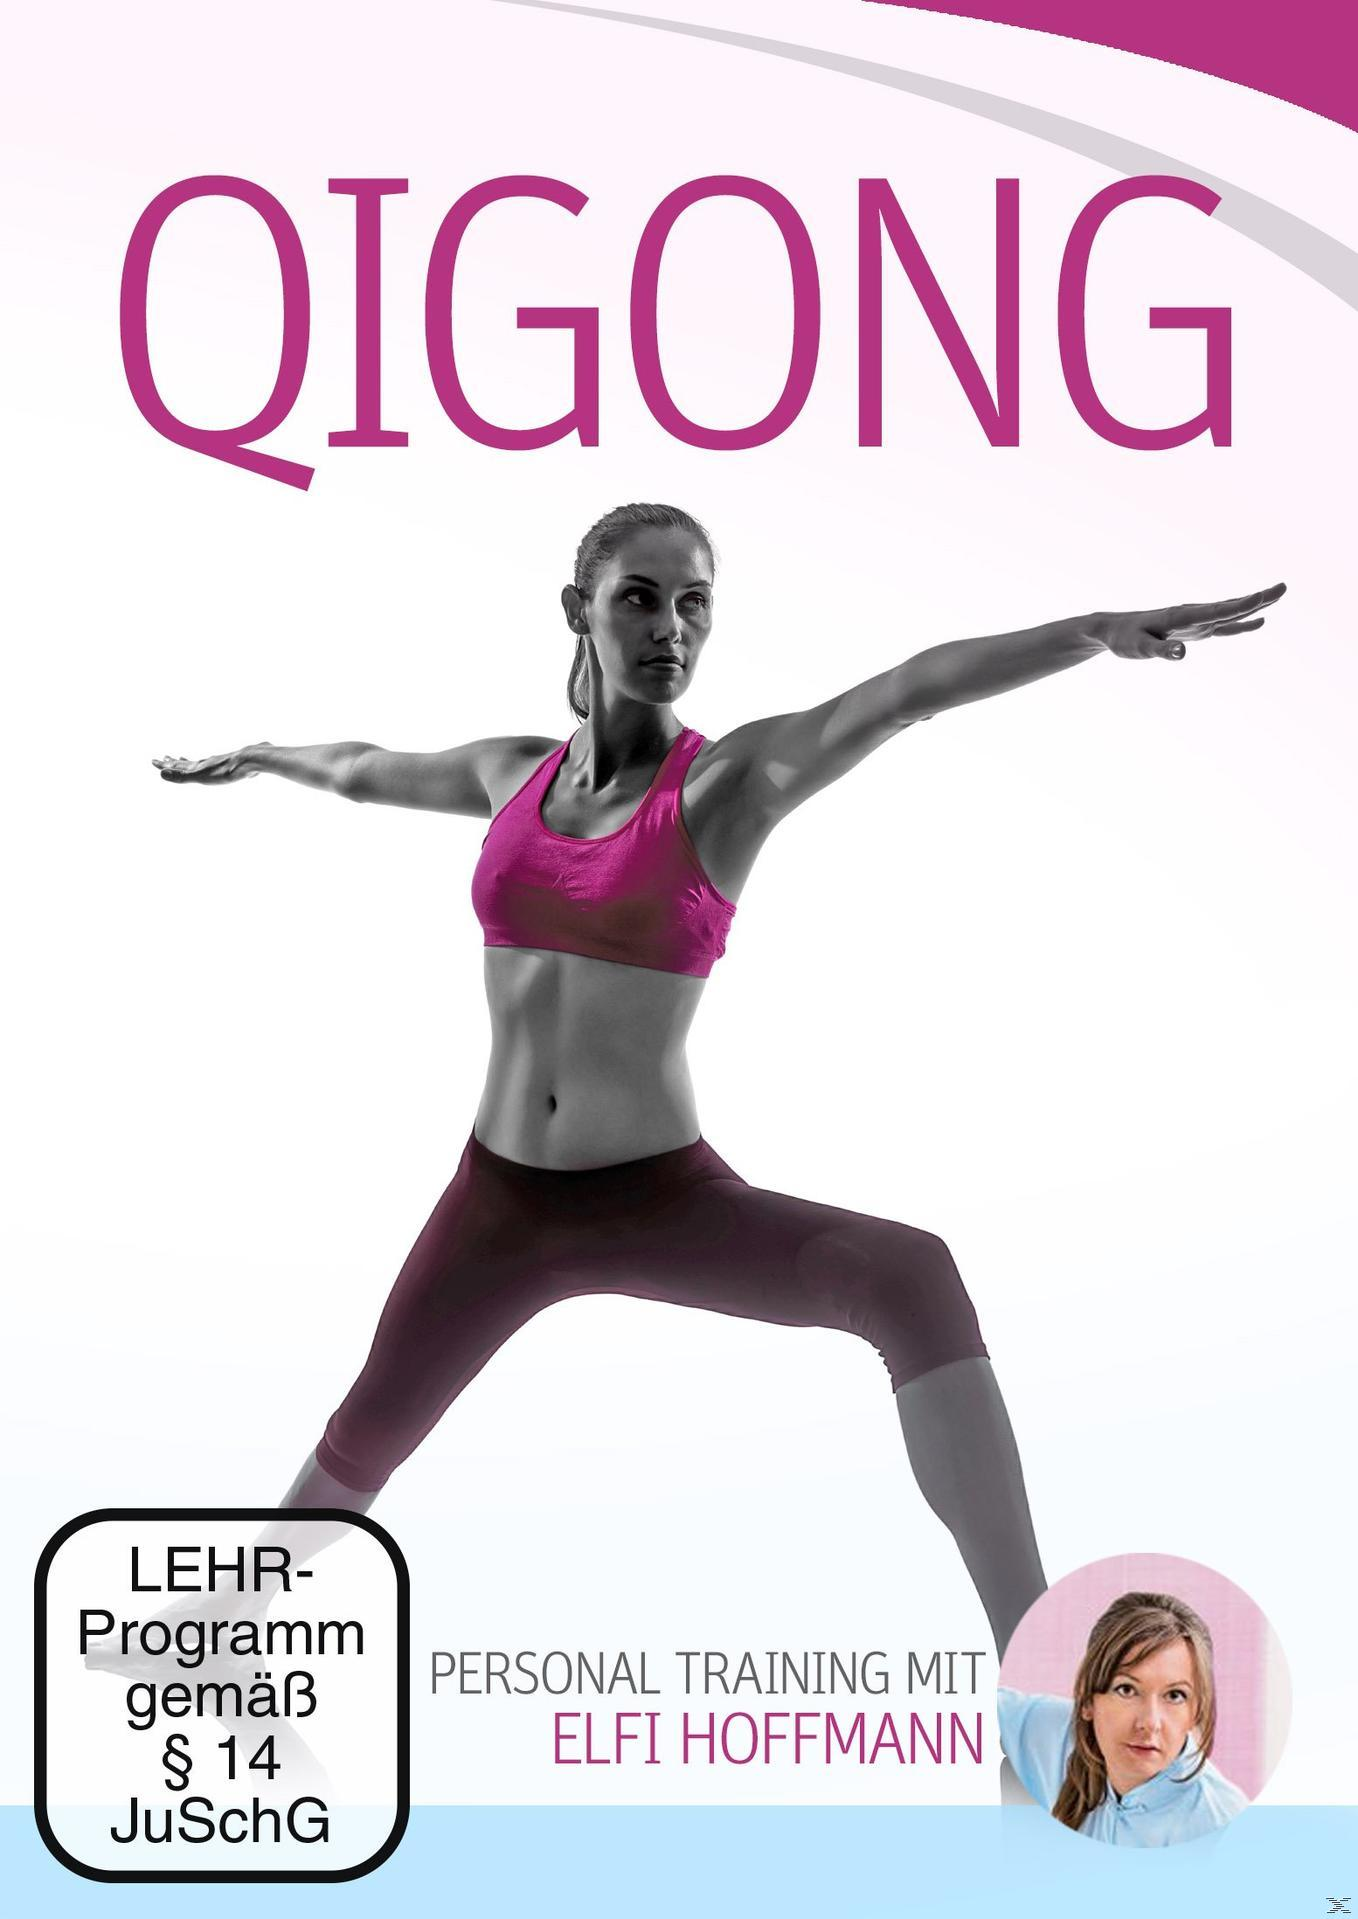 Qigong DVD